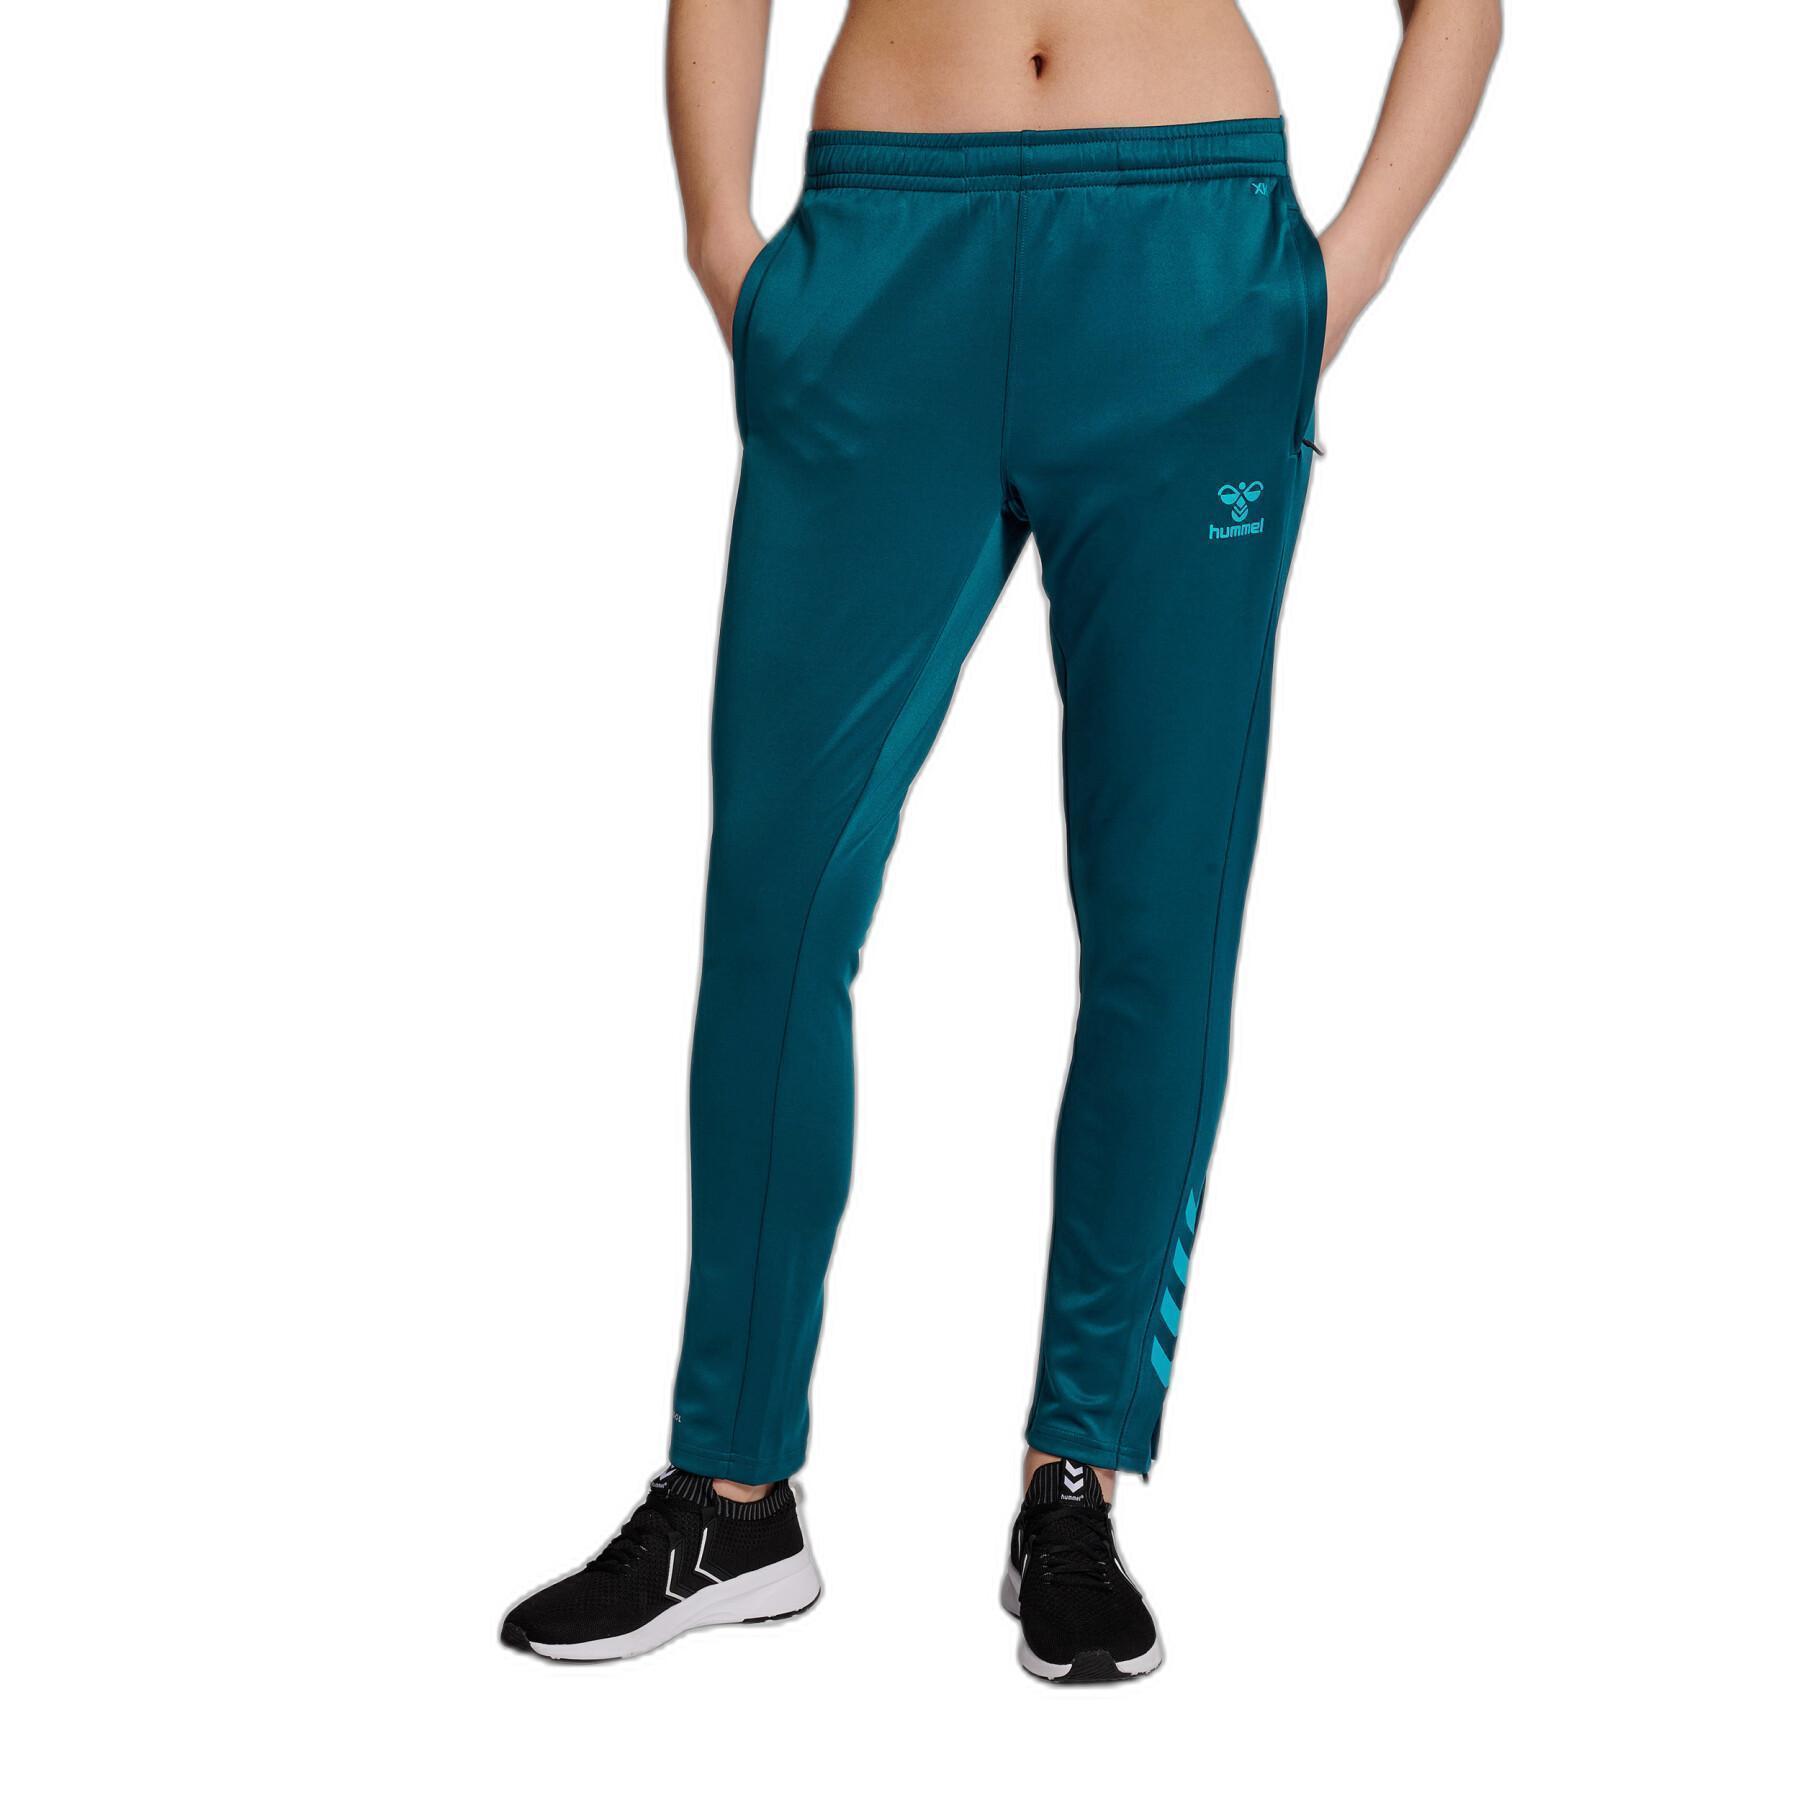 Polyester jogging suit for women Hummel Core Xk